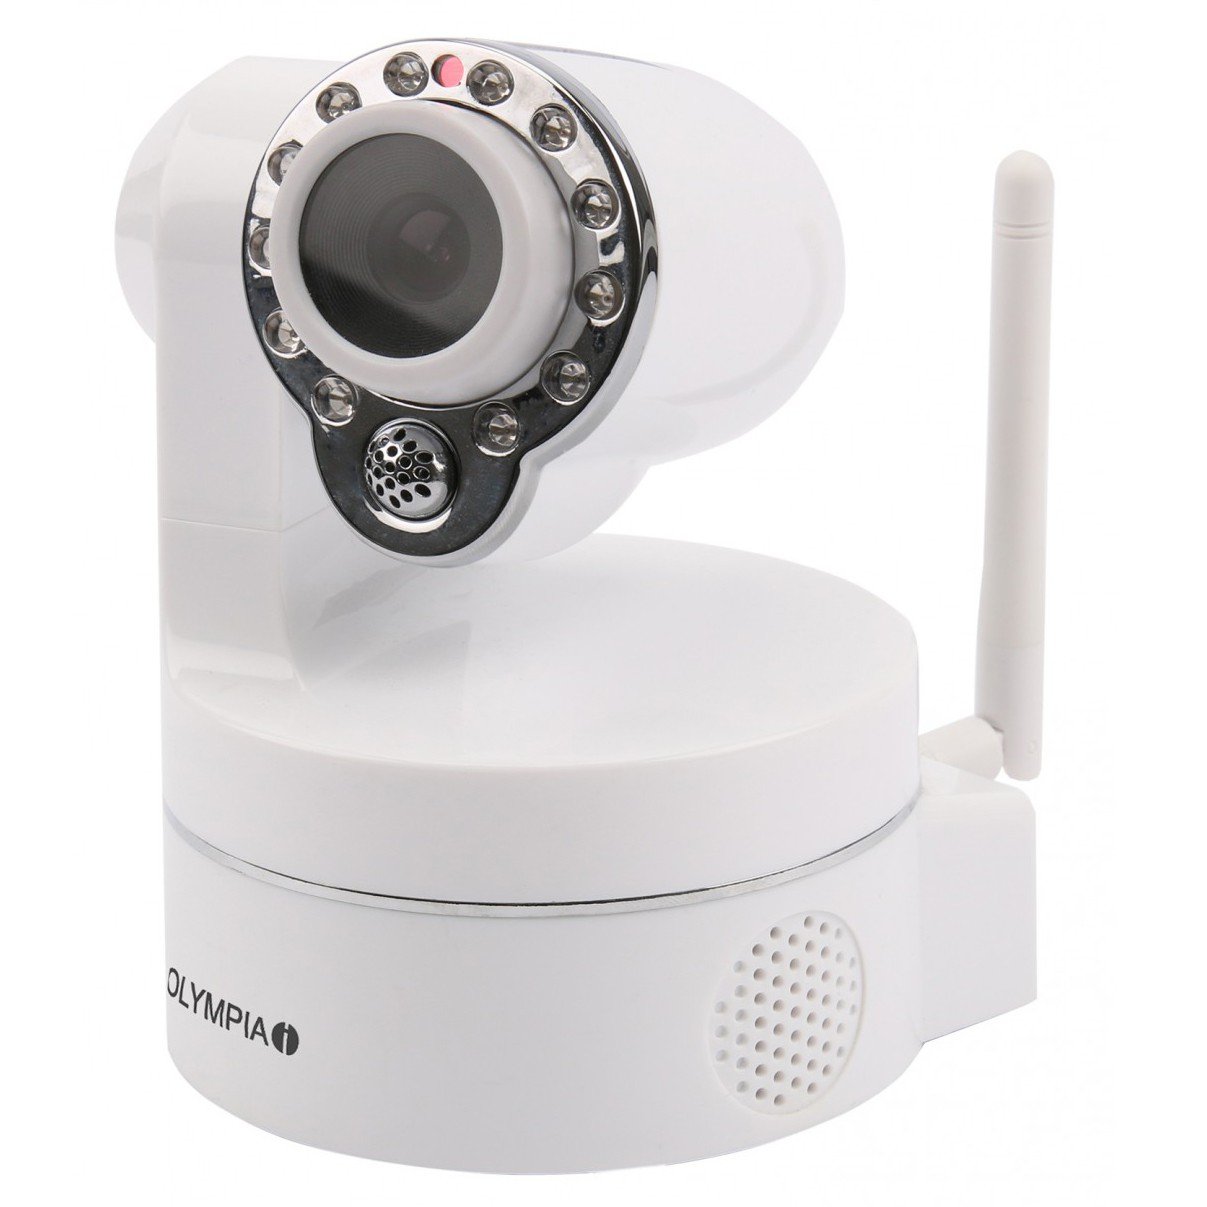 Olympia 5938 IP Kamera, auch an Protect und Prohome Serie nutzbar, Zubehör, App Steuerung